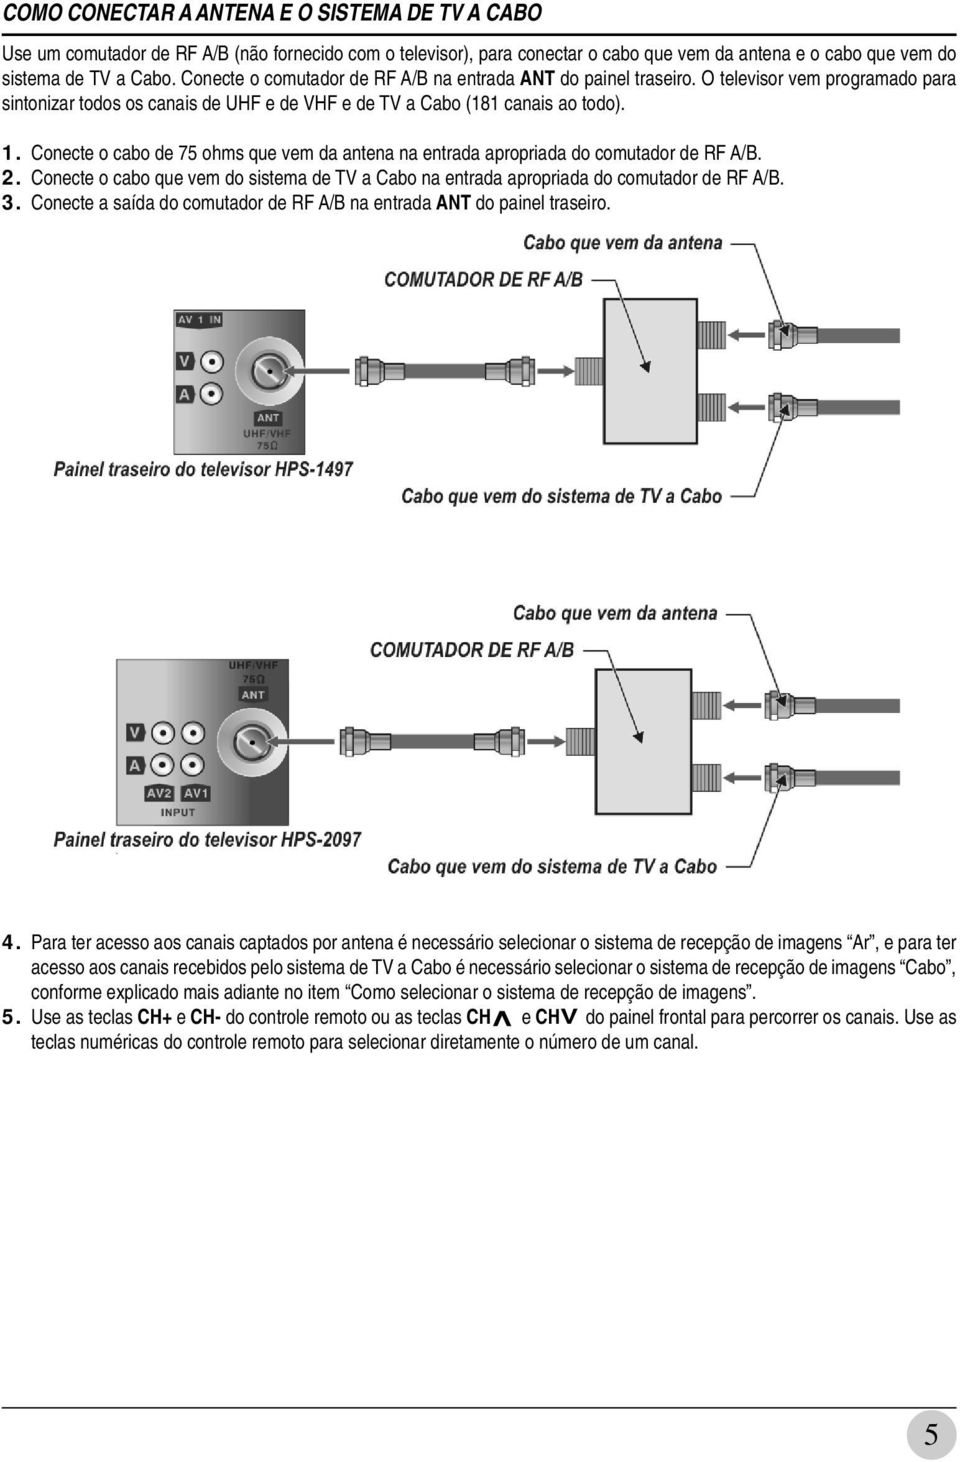 Conecte o cabo de 75 ohms que vem da antena na entrada apropriada do comutador de RF A/B. 2. Conecte o cabo que vem do sistema de TV a Cabo na entrada apropriada do comutador de RF A/B. 3.